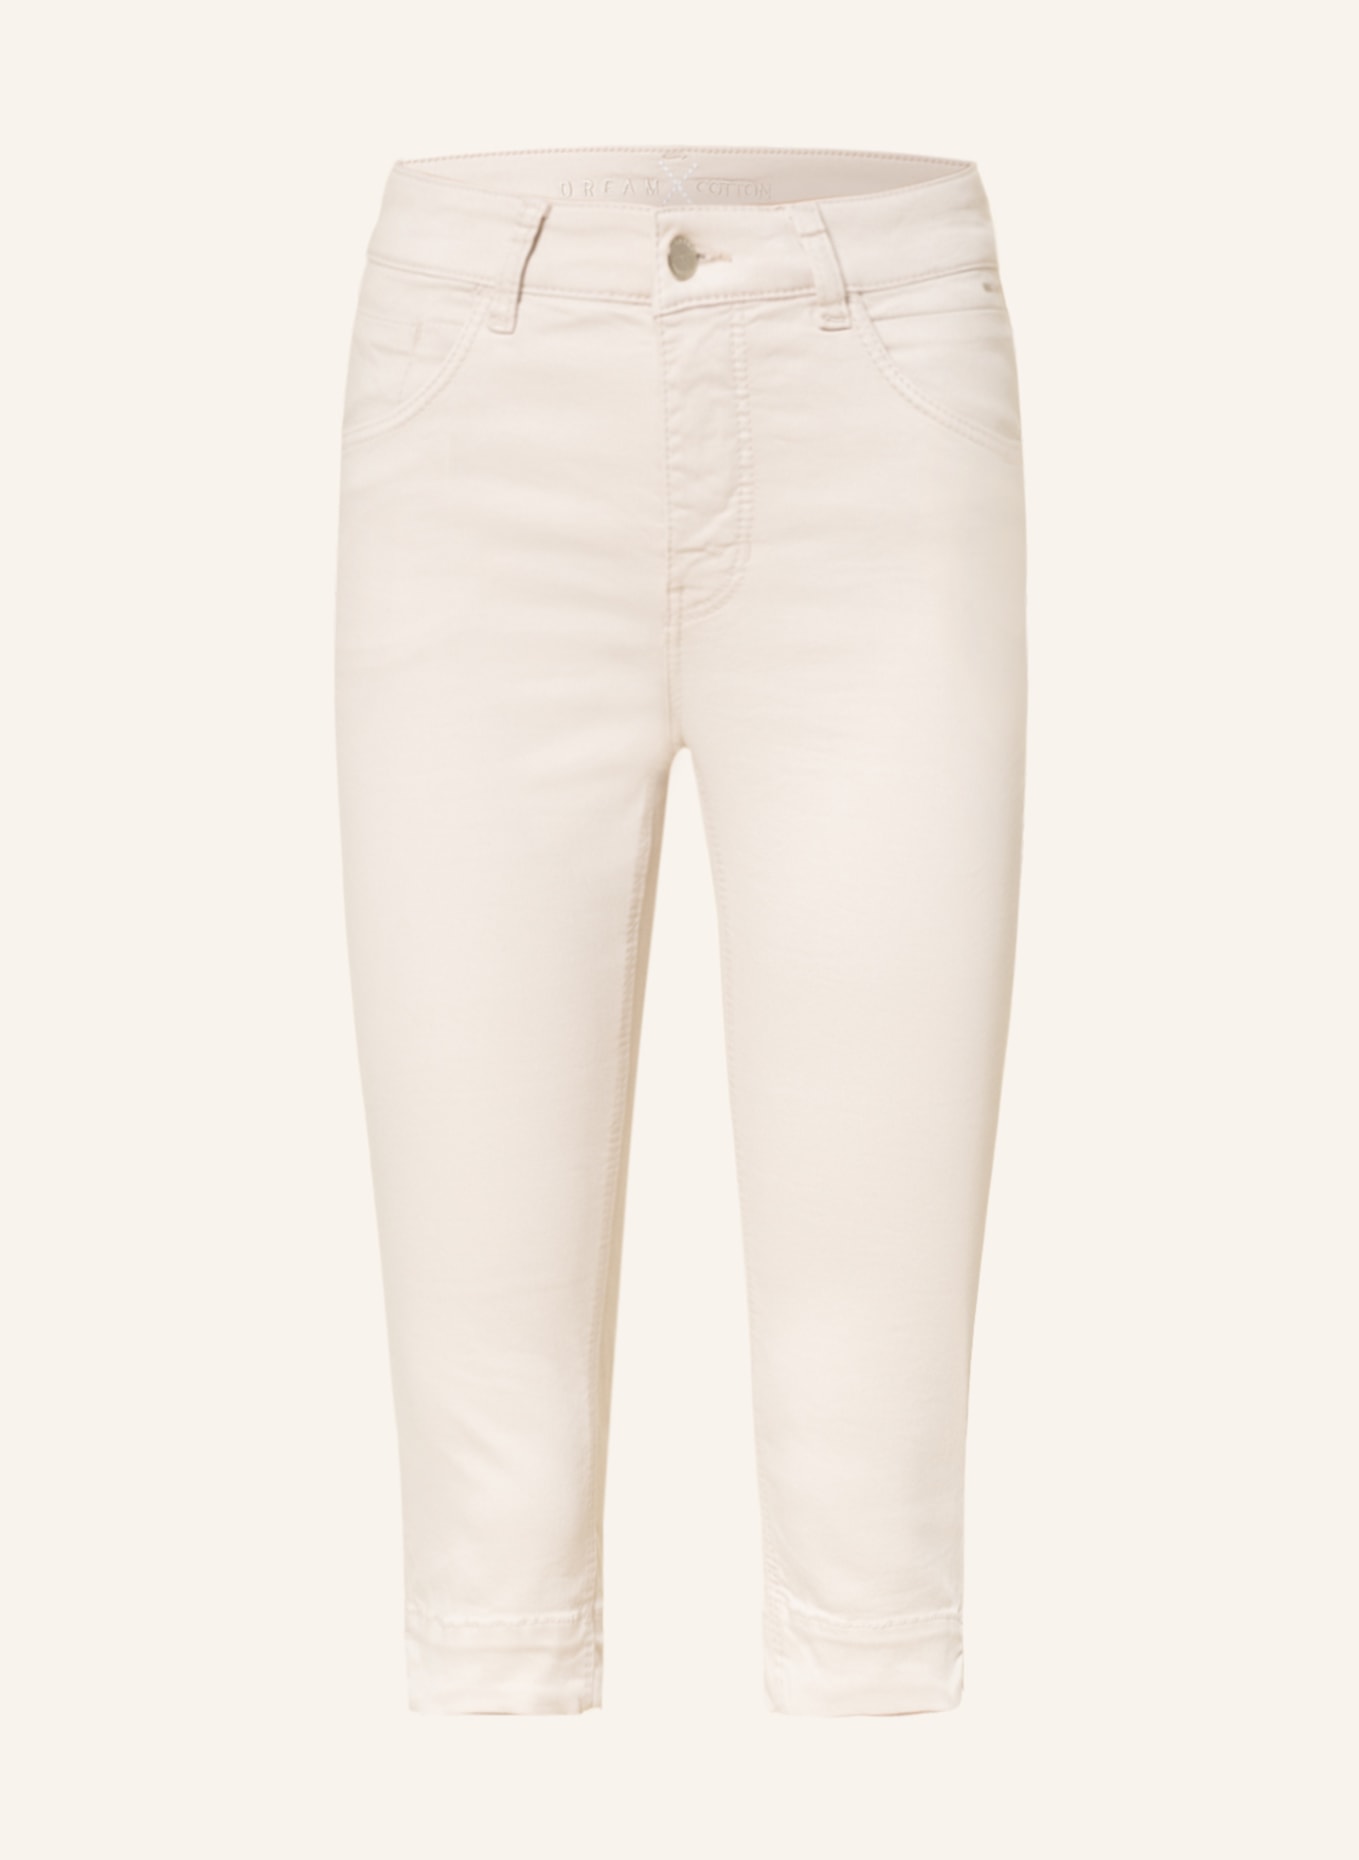 Plus Size Capri Pants | Yours Clothing